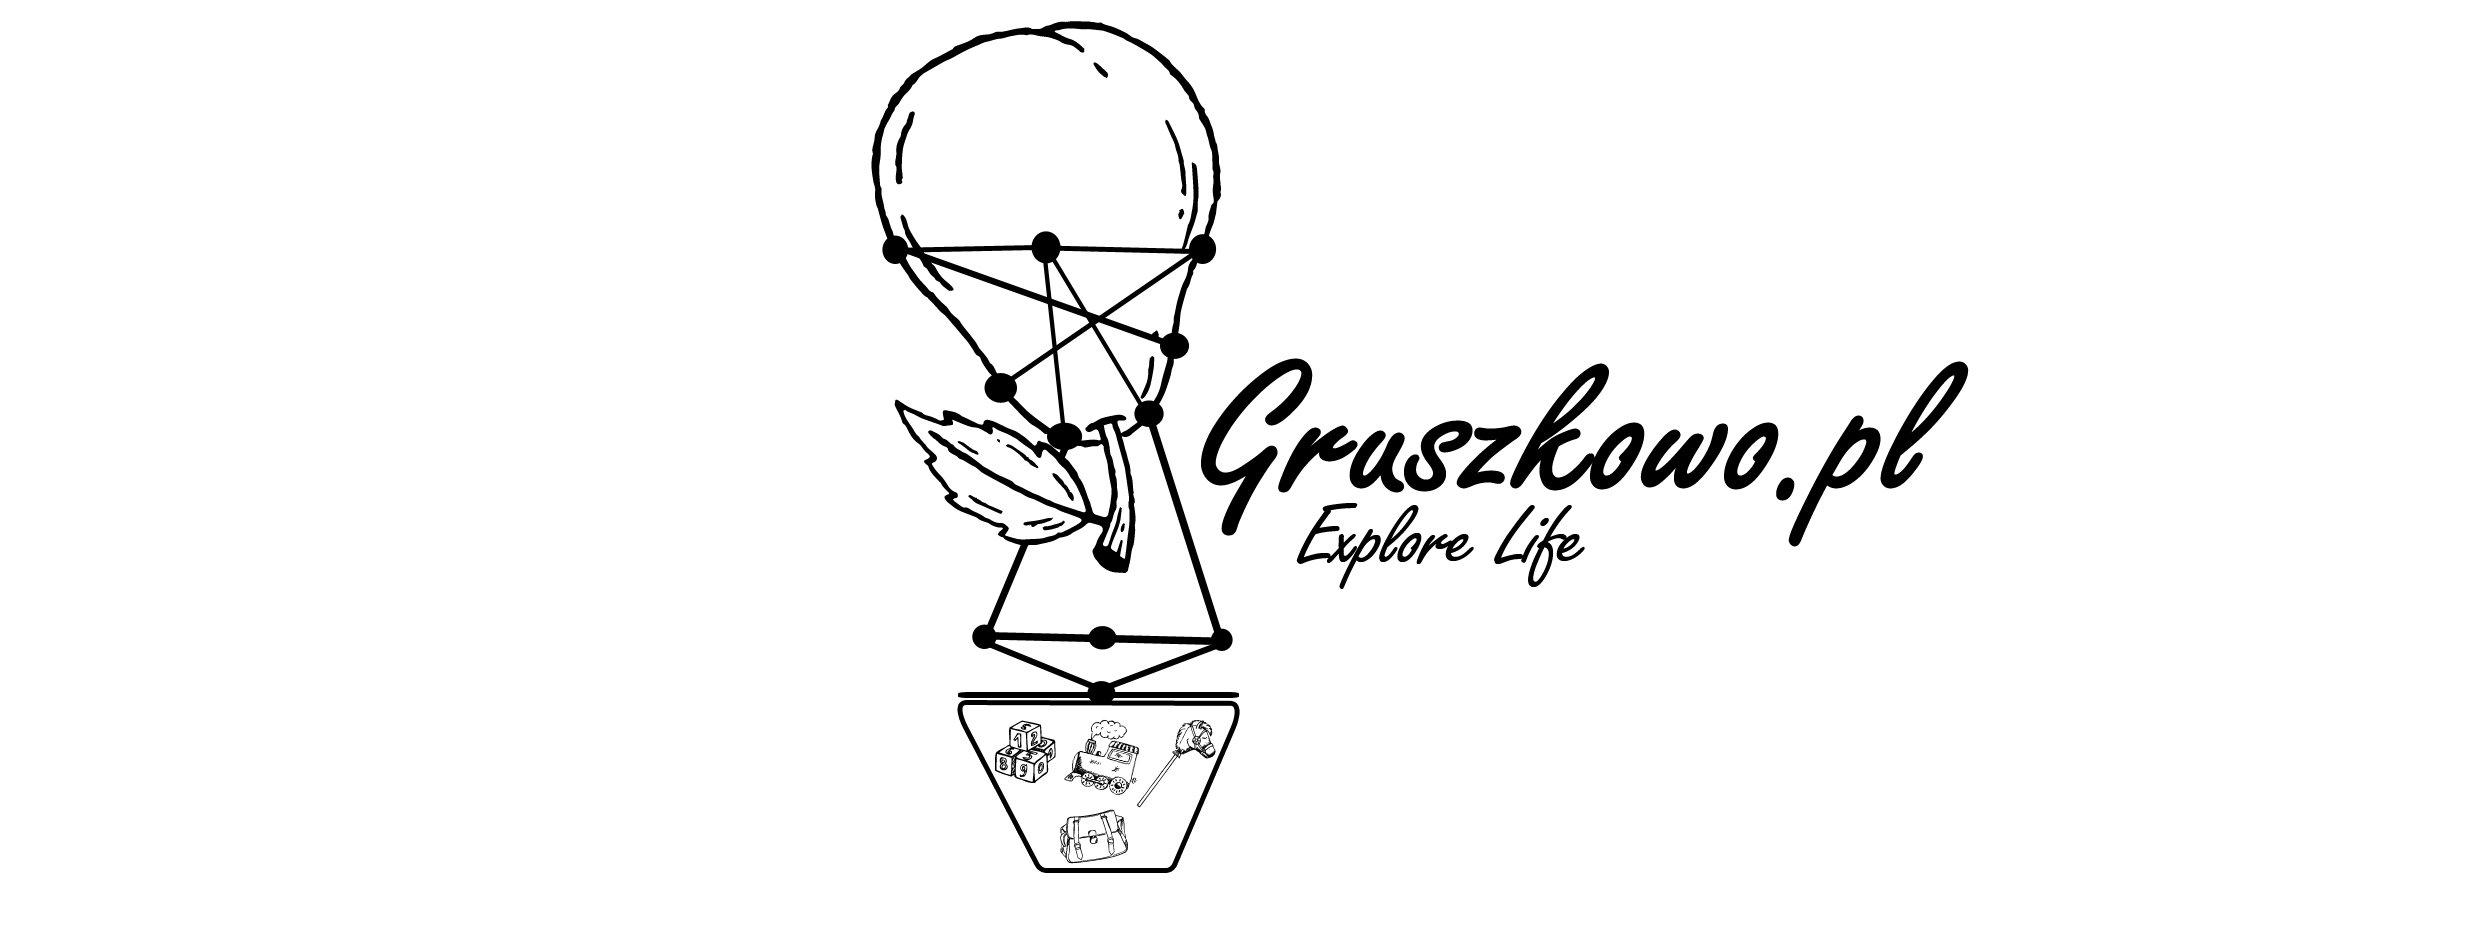 Gruszkowo.pl - Blog lifestylowo-parentingowy - Rodzina patchworkowa